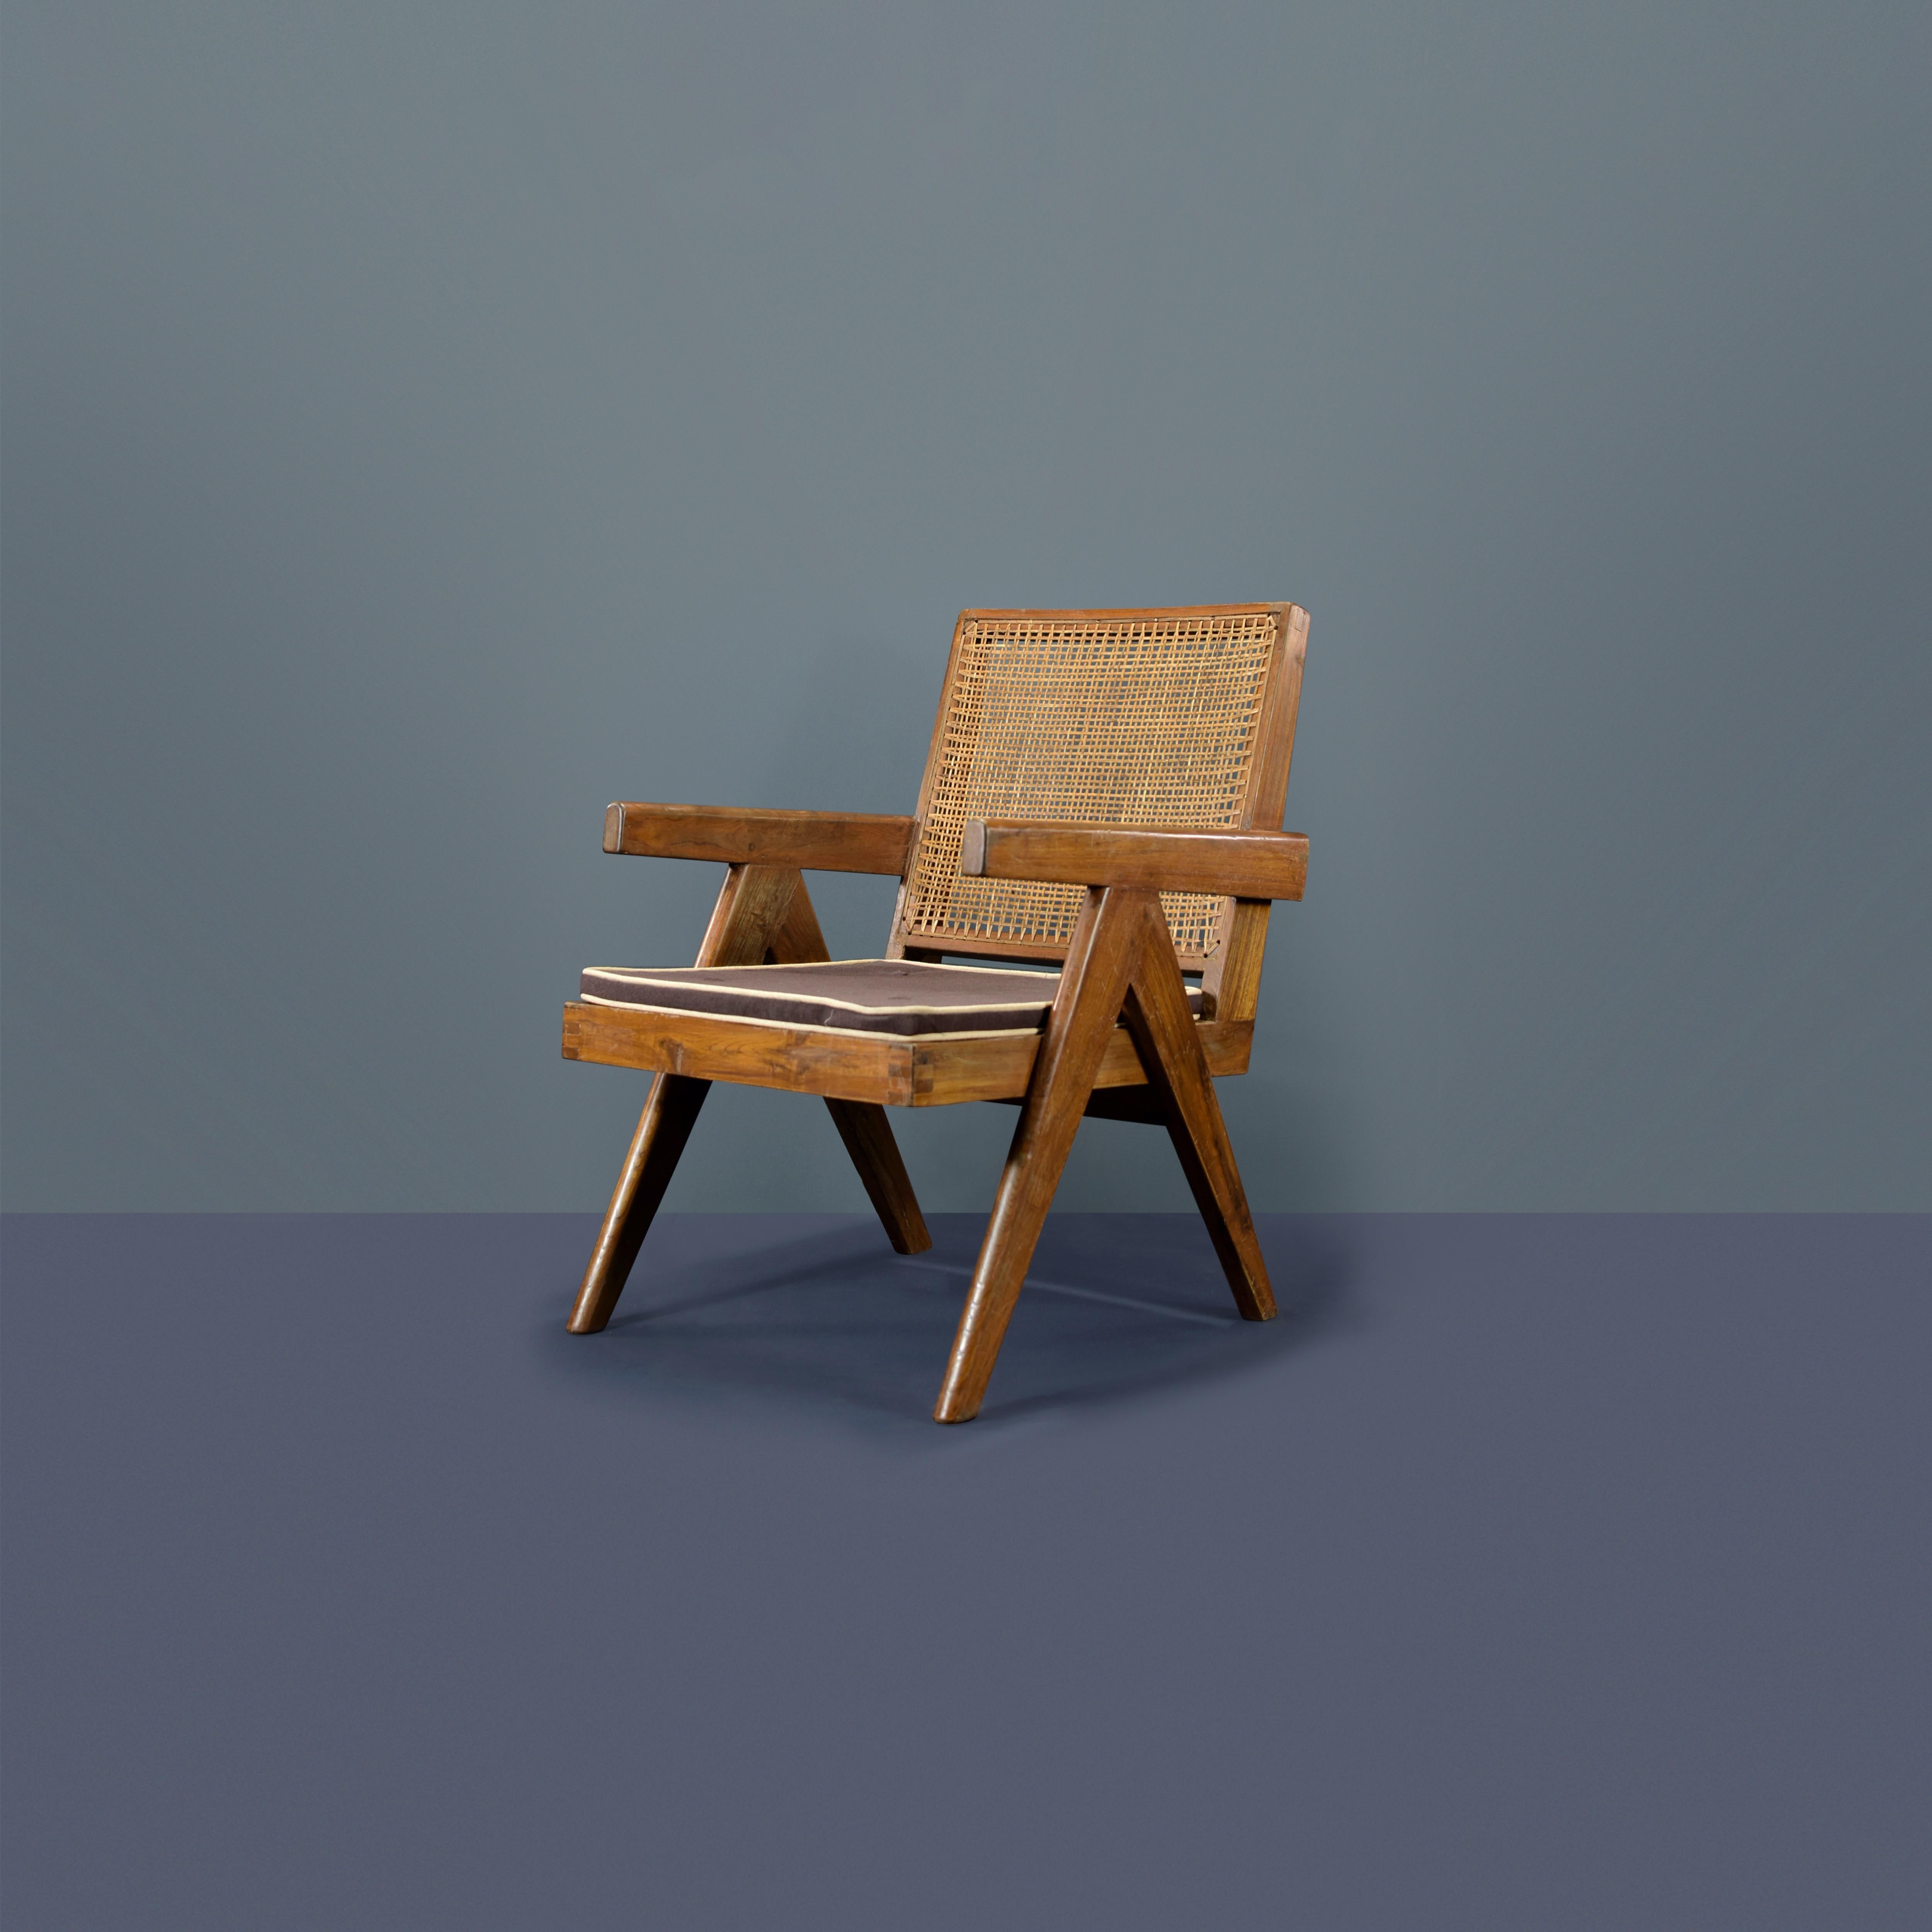 Dieser Stuhl ist nicht nur ein fantastisches Stück, er ist auch ein Design-Statement. Schließlich handelt es sich um einen der berühmtesten Sessel aus Chandigarh. Es ist roh, einfach und poetisch und drückt eine wunderbare Nonchalance aus. Seine